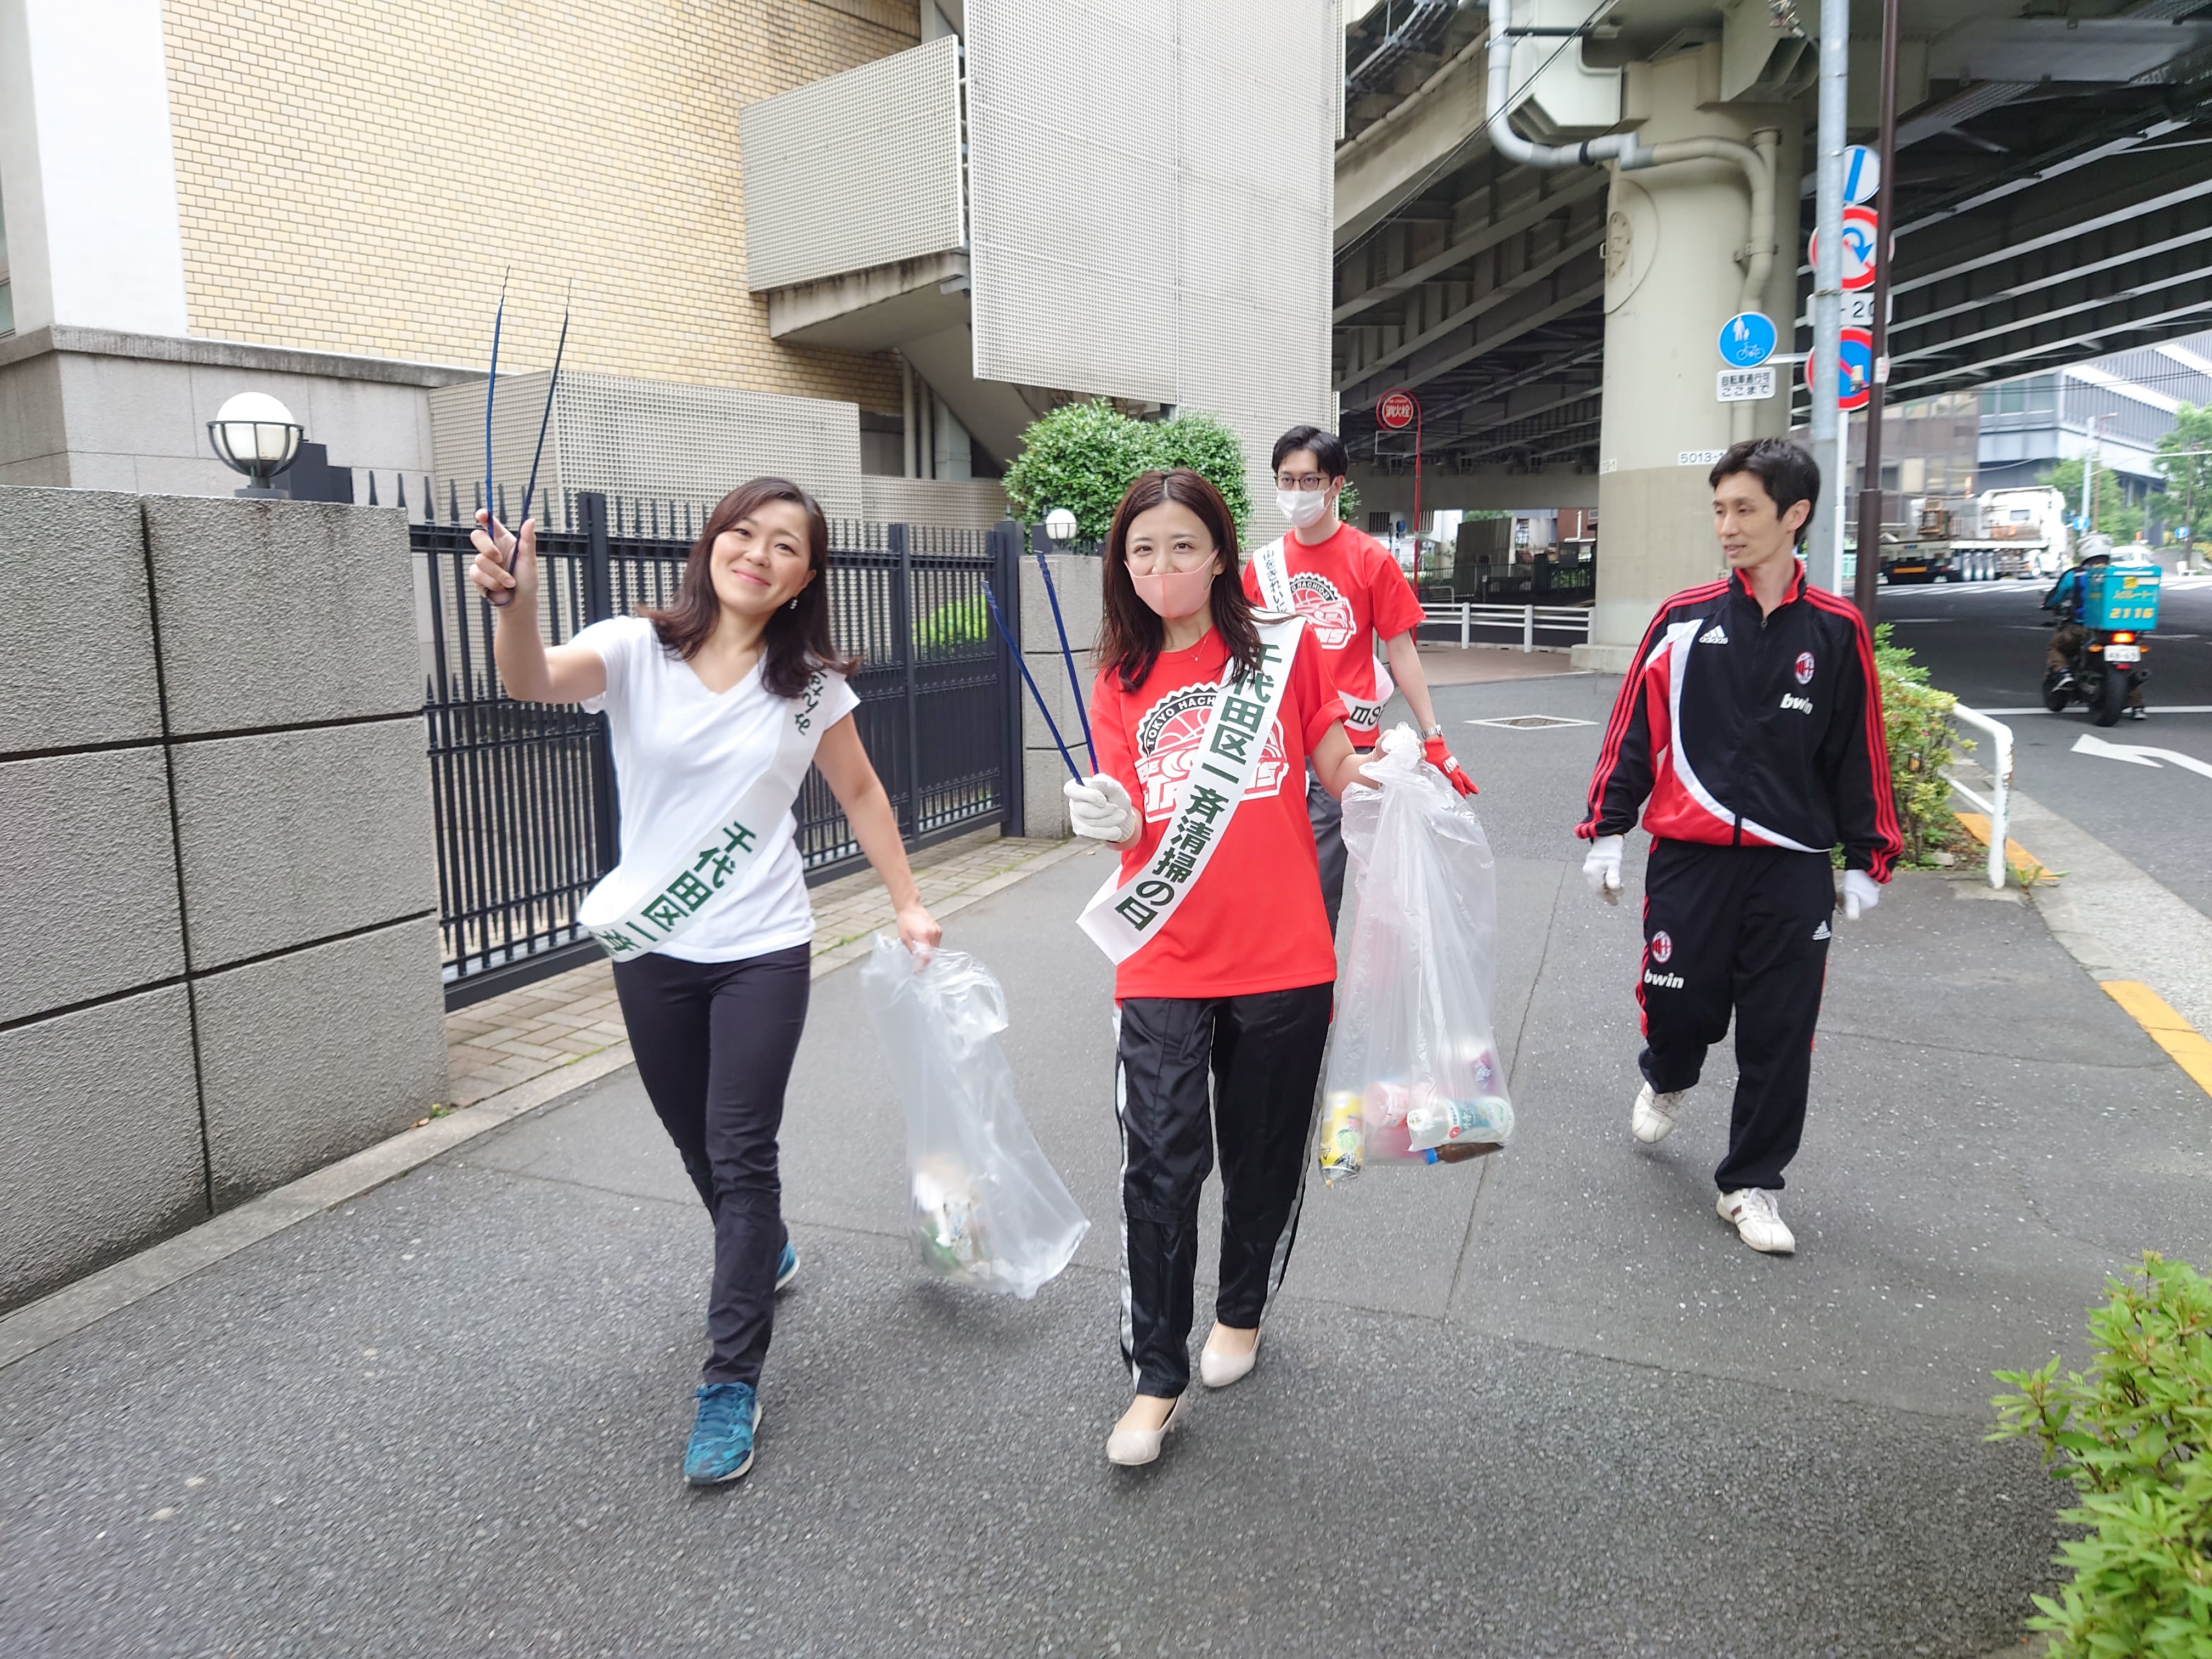 「千代田区一斉清掃の日」の清掃活動に参加しました